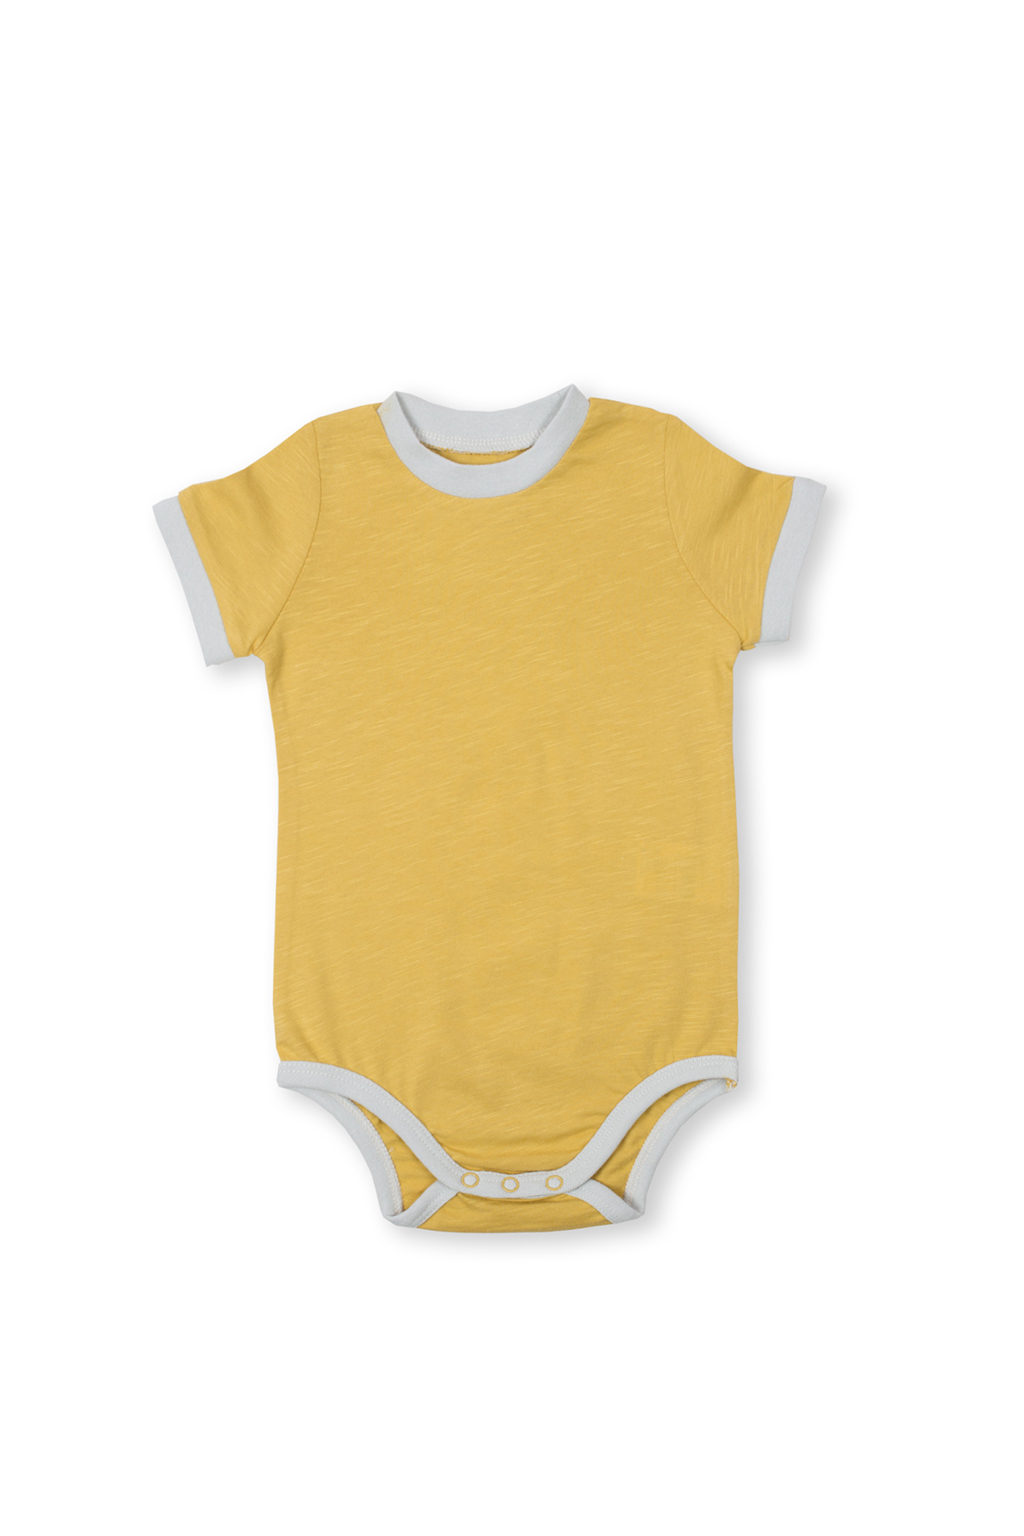 Body pro miminko mustard, Hořčicově žlutá (Kojenecké oblečení) Velikost: 92